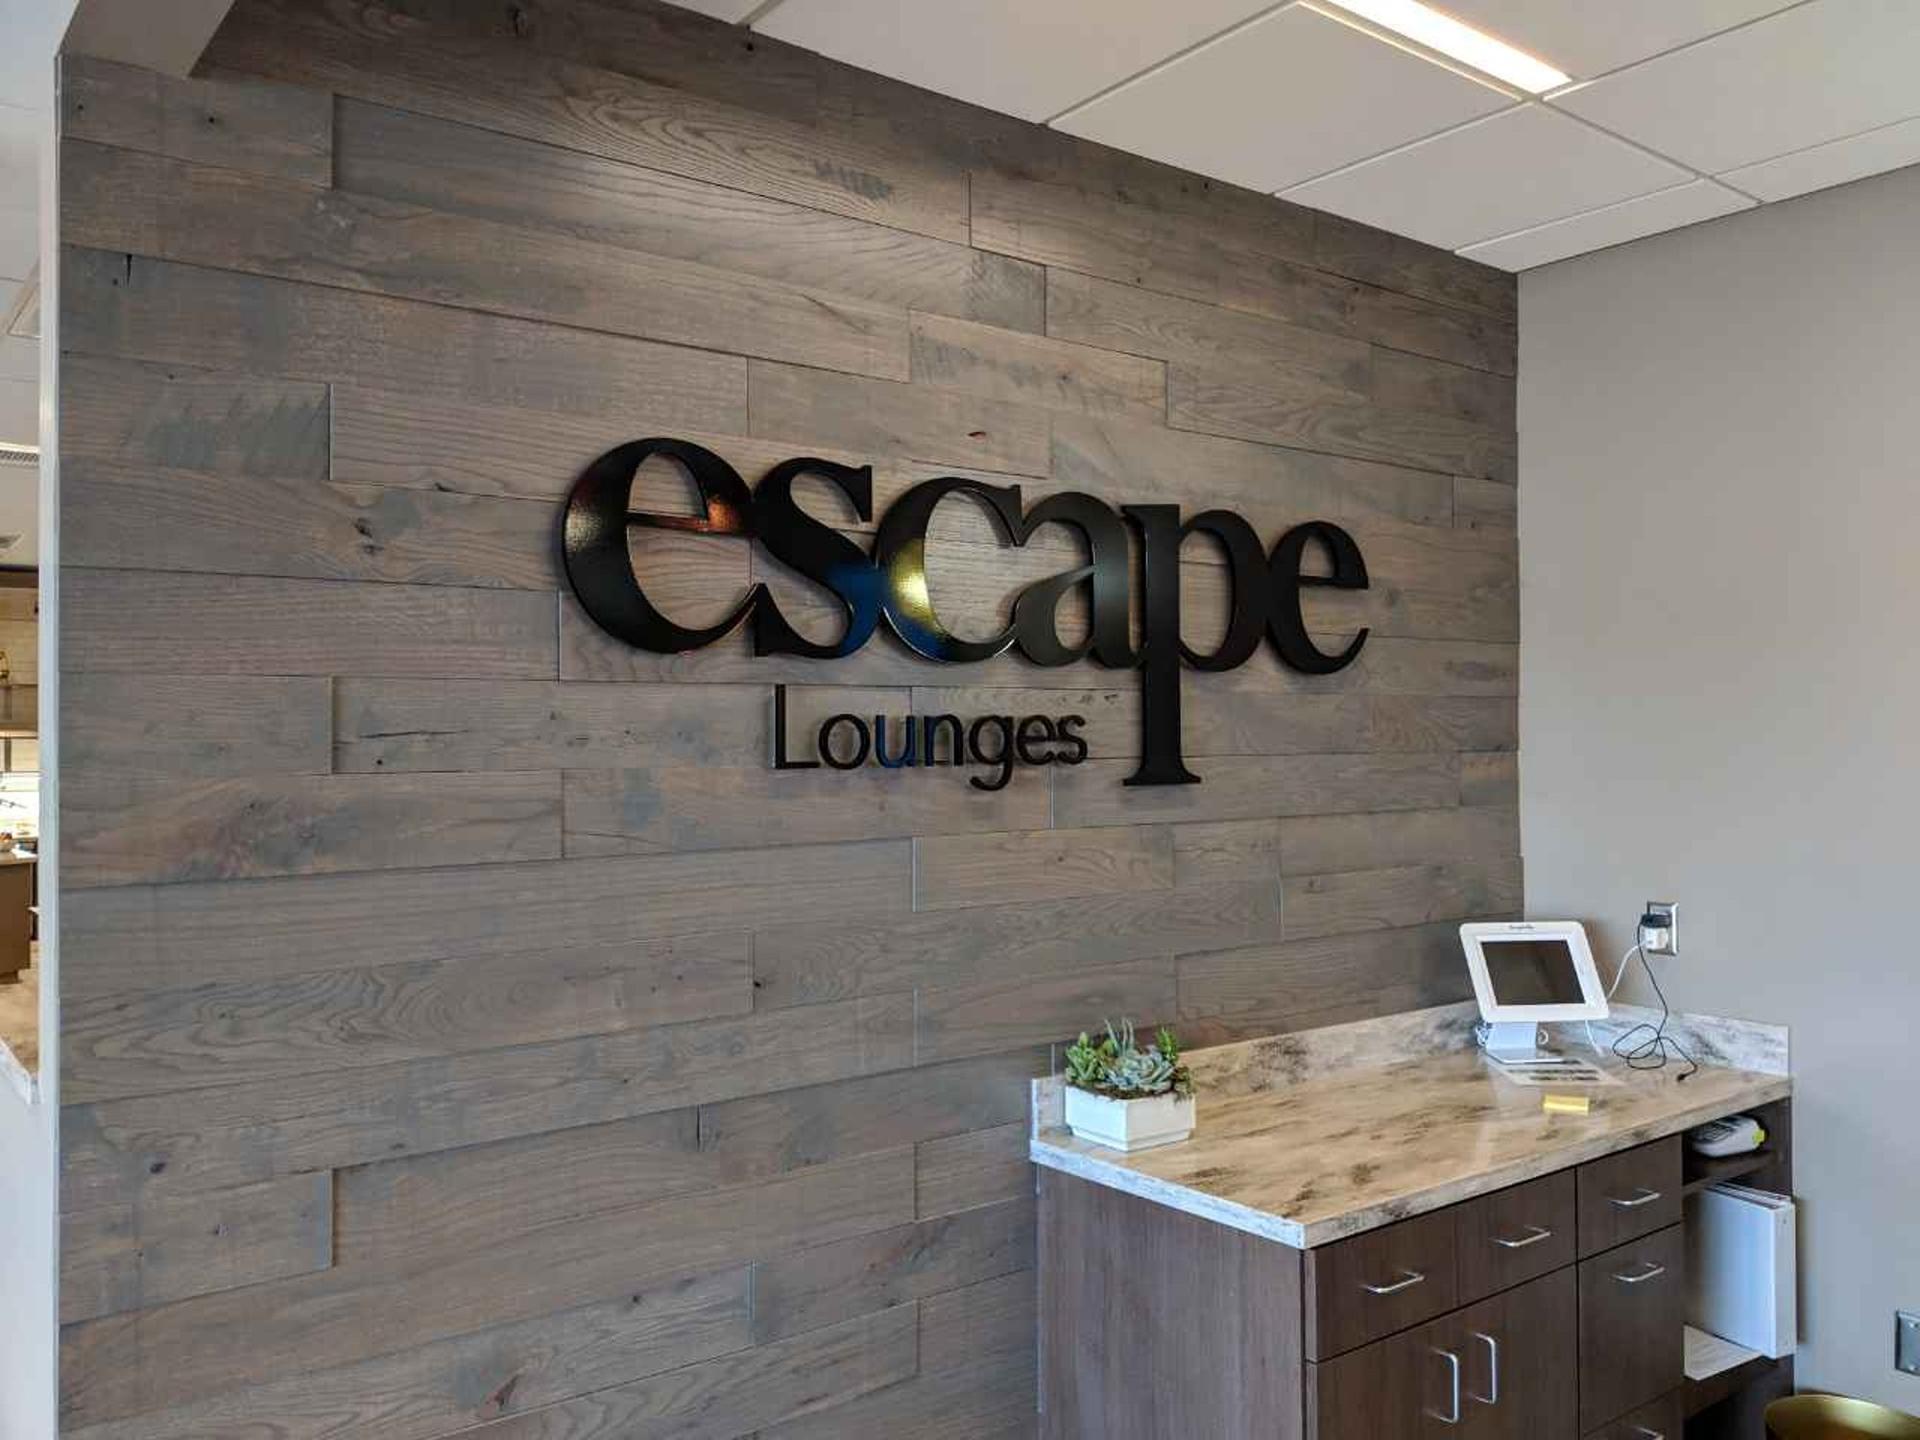 Escape Lounges - The Centurion® Studio Partner image 9 of 19